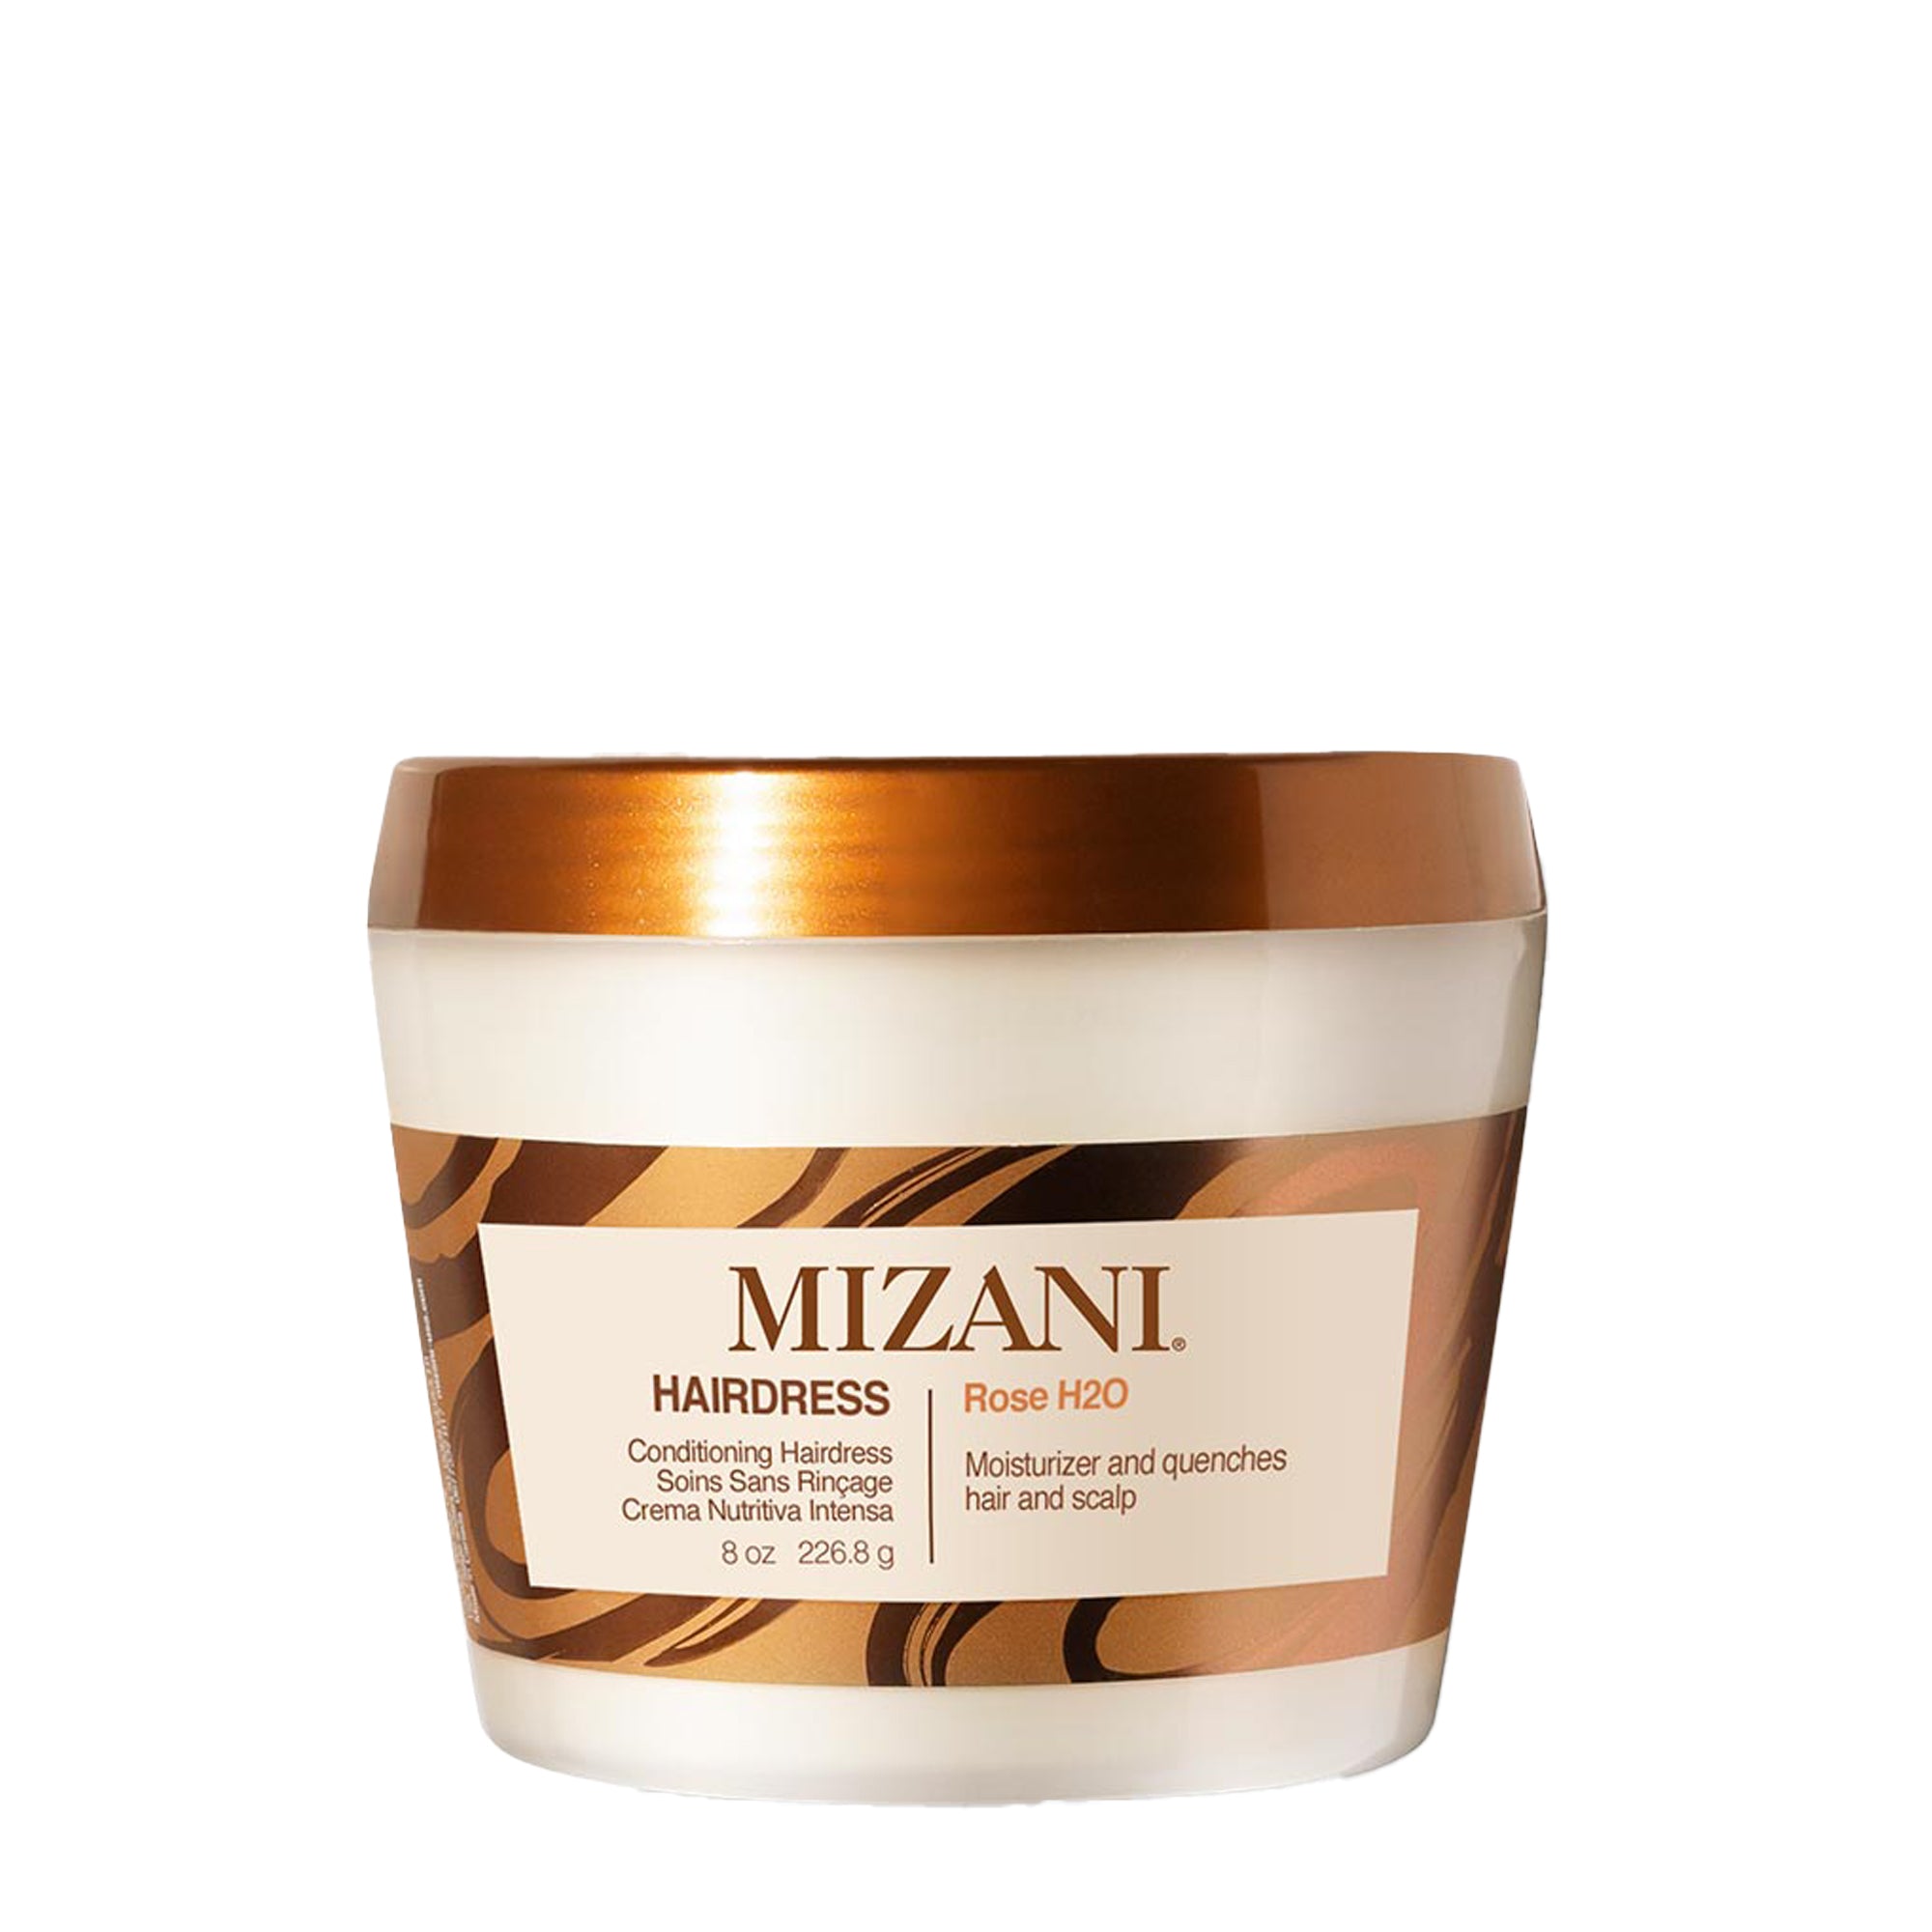 Mizani Rose H2O Hairdress / 8OZ